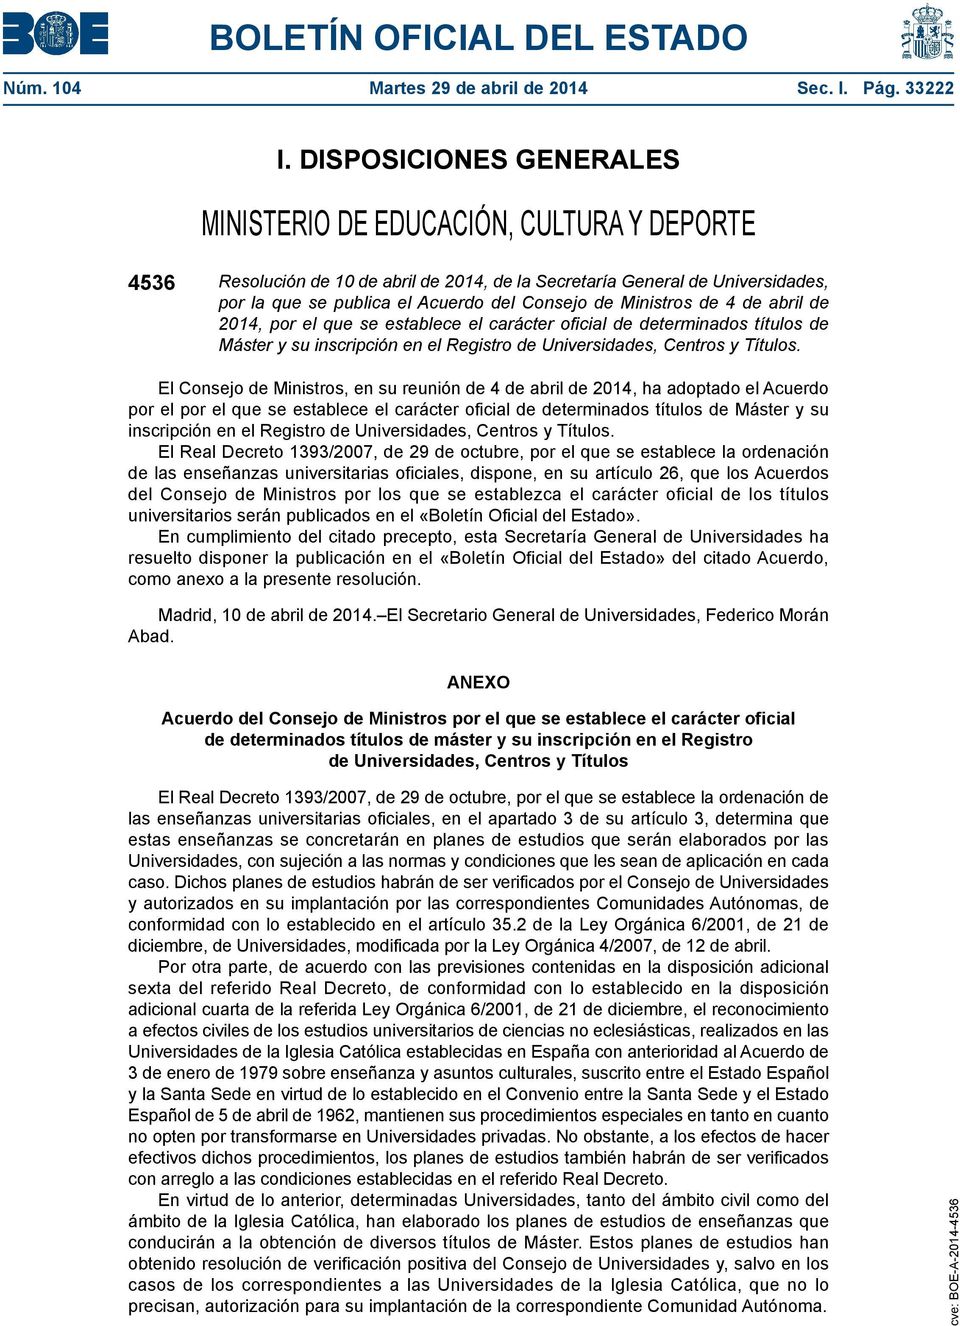 Ministros de 4 de abril de 2014, por el que se establece el carácter oficial de determinados títulos de Máster y su inscripción en el Registro de Universidades, Centros y Títulos.